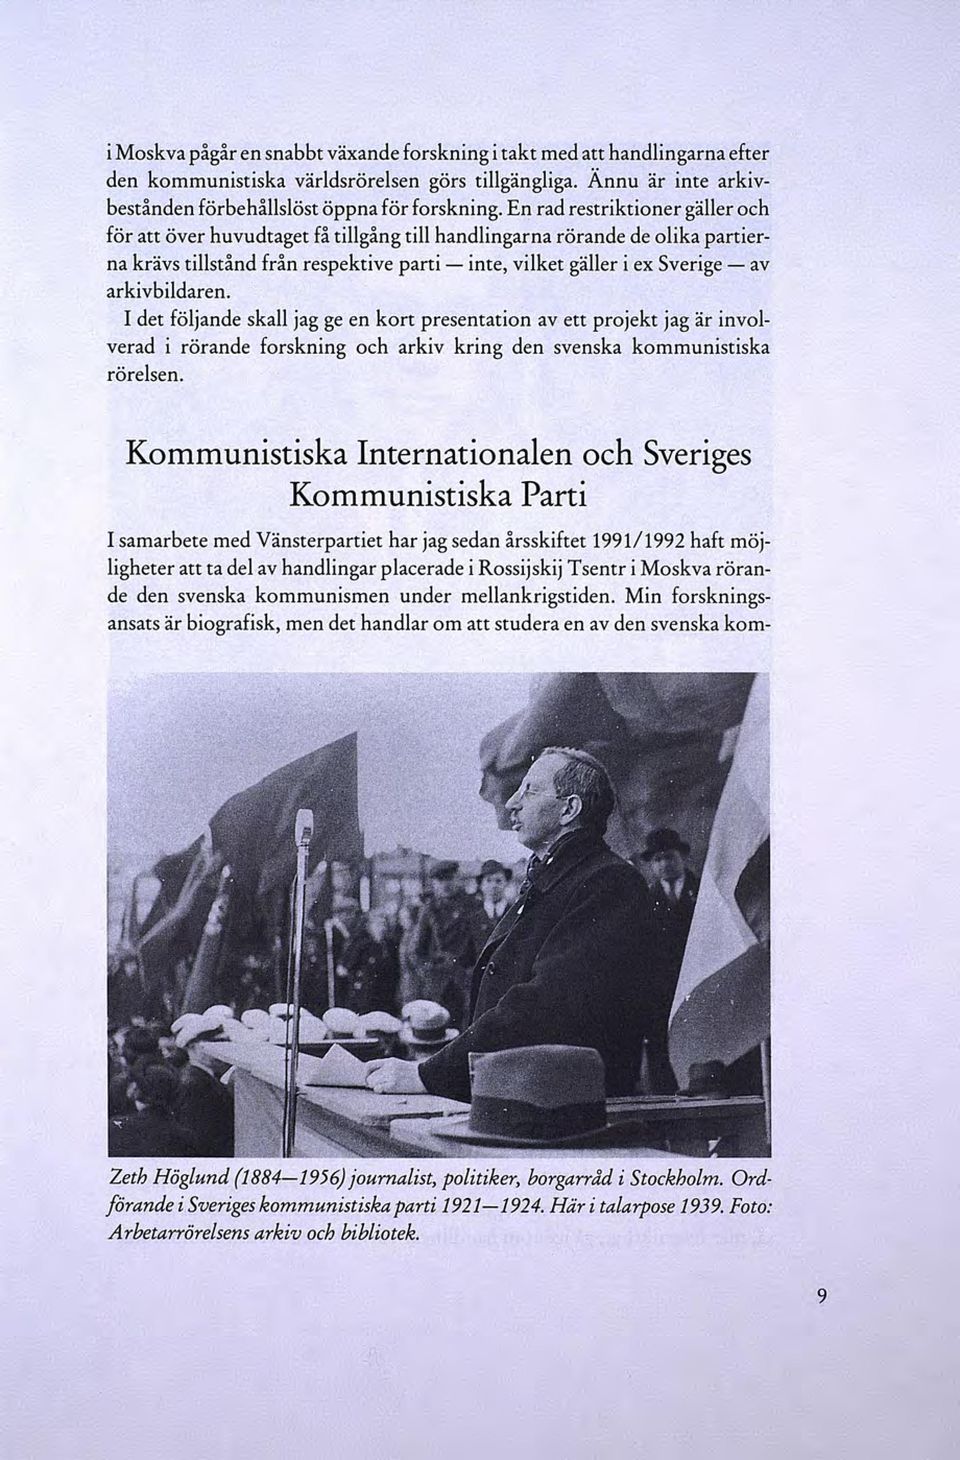 arkivbildaren. I det följande skall jag ge en kort presentation av ett projekt jag är involverad i rörande forskning och arkiv kring den svenska kommunistiska rörelsen.